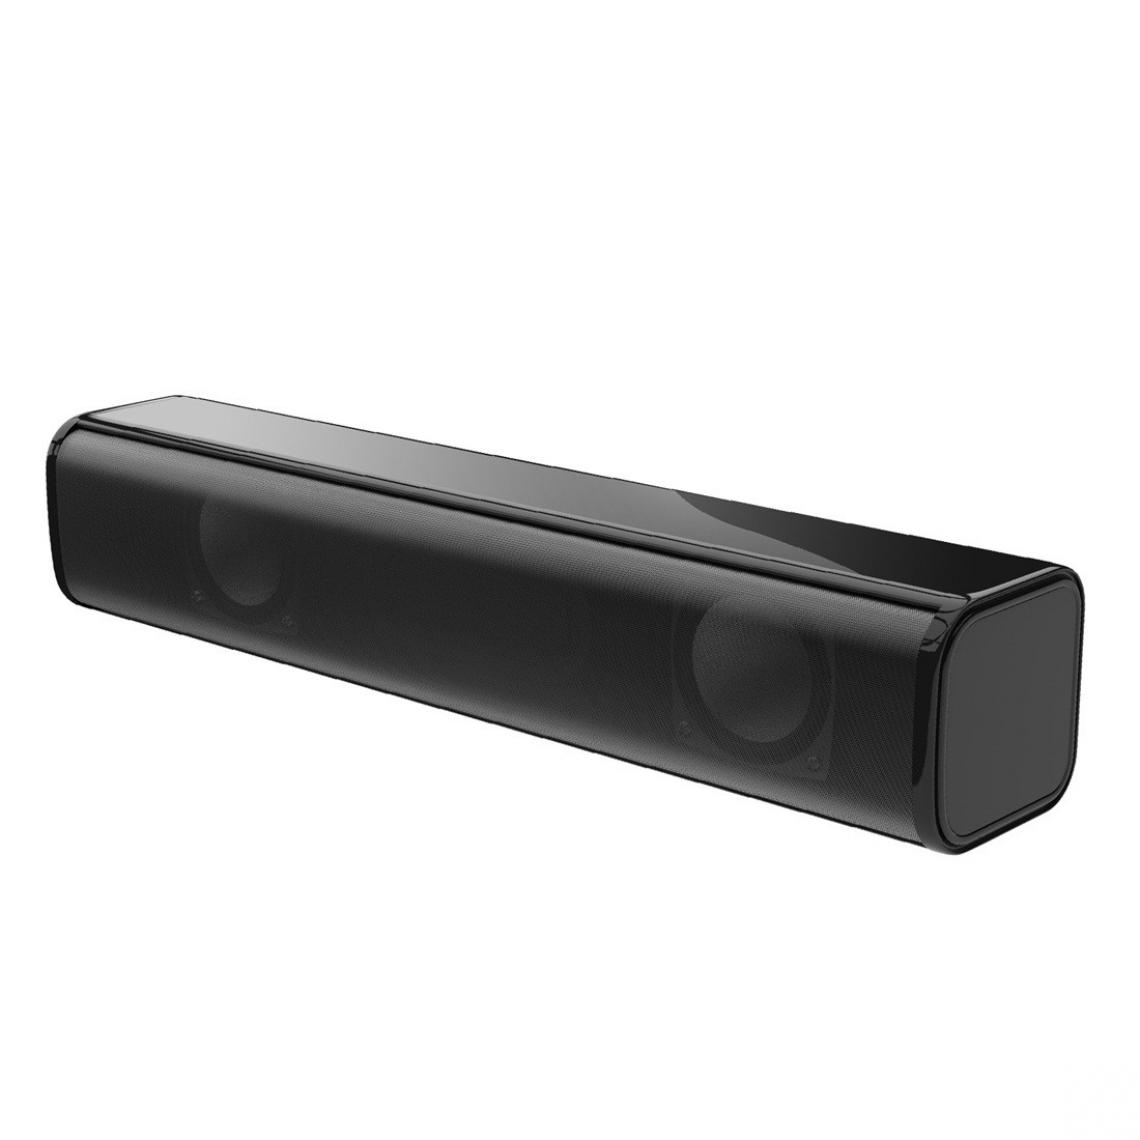 Wewoo - Enceinte Bluetooth HXSJ Q2 Mini Ordinateur portable à usage domestique de bureau Filaire Subwoofer Haut-parleur lourd Noir - Enceintes Hifi